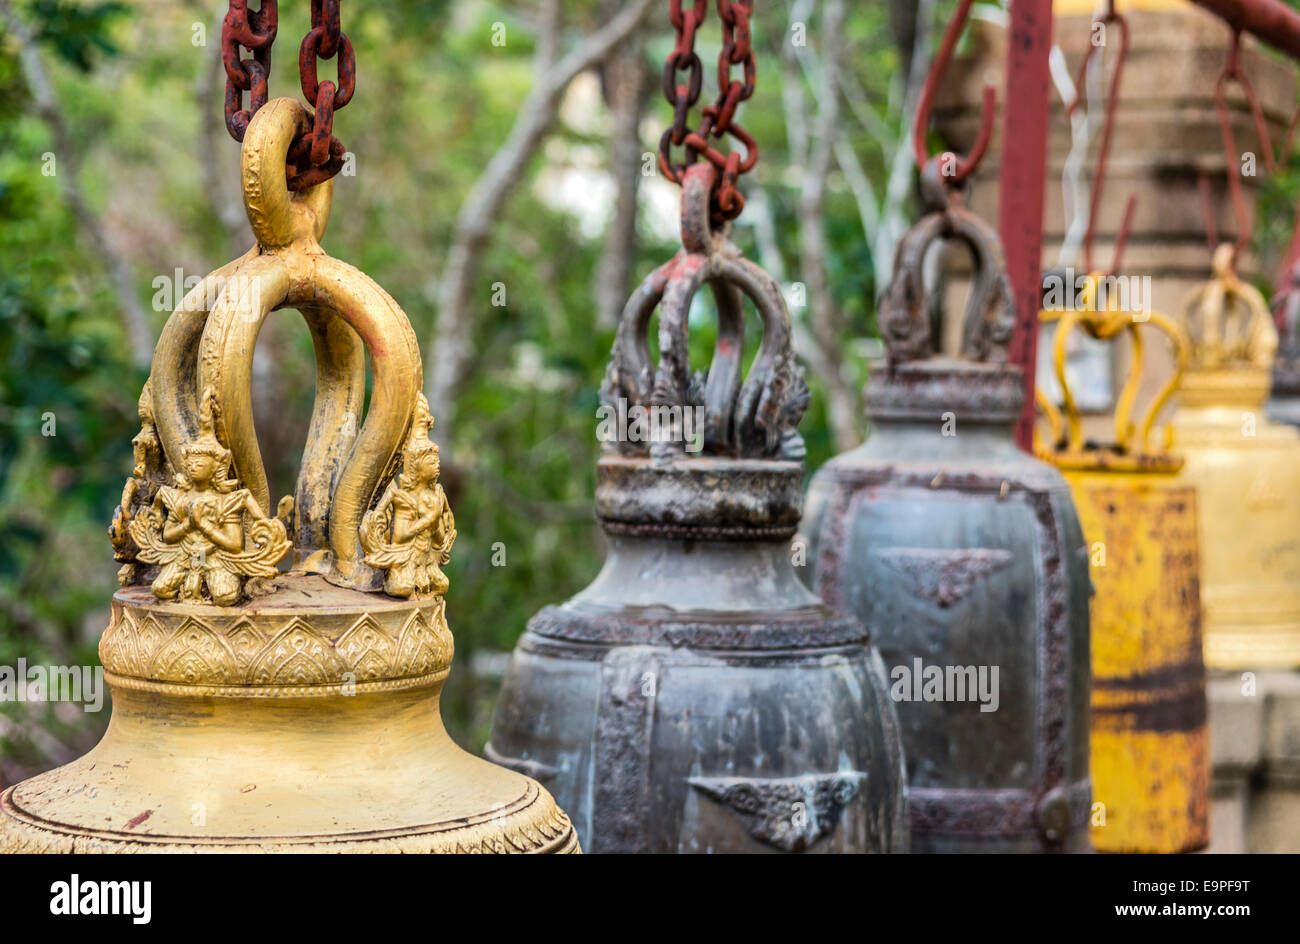 Tempio buddista di campane a Wat Phithak Chaiyaphum, Tailandia | Buddhistische Tempel Glocken im Wat Phithak Chaiyaphum, Thailandia Foto Stock